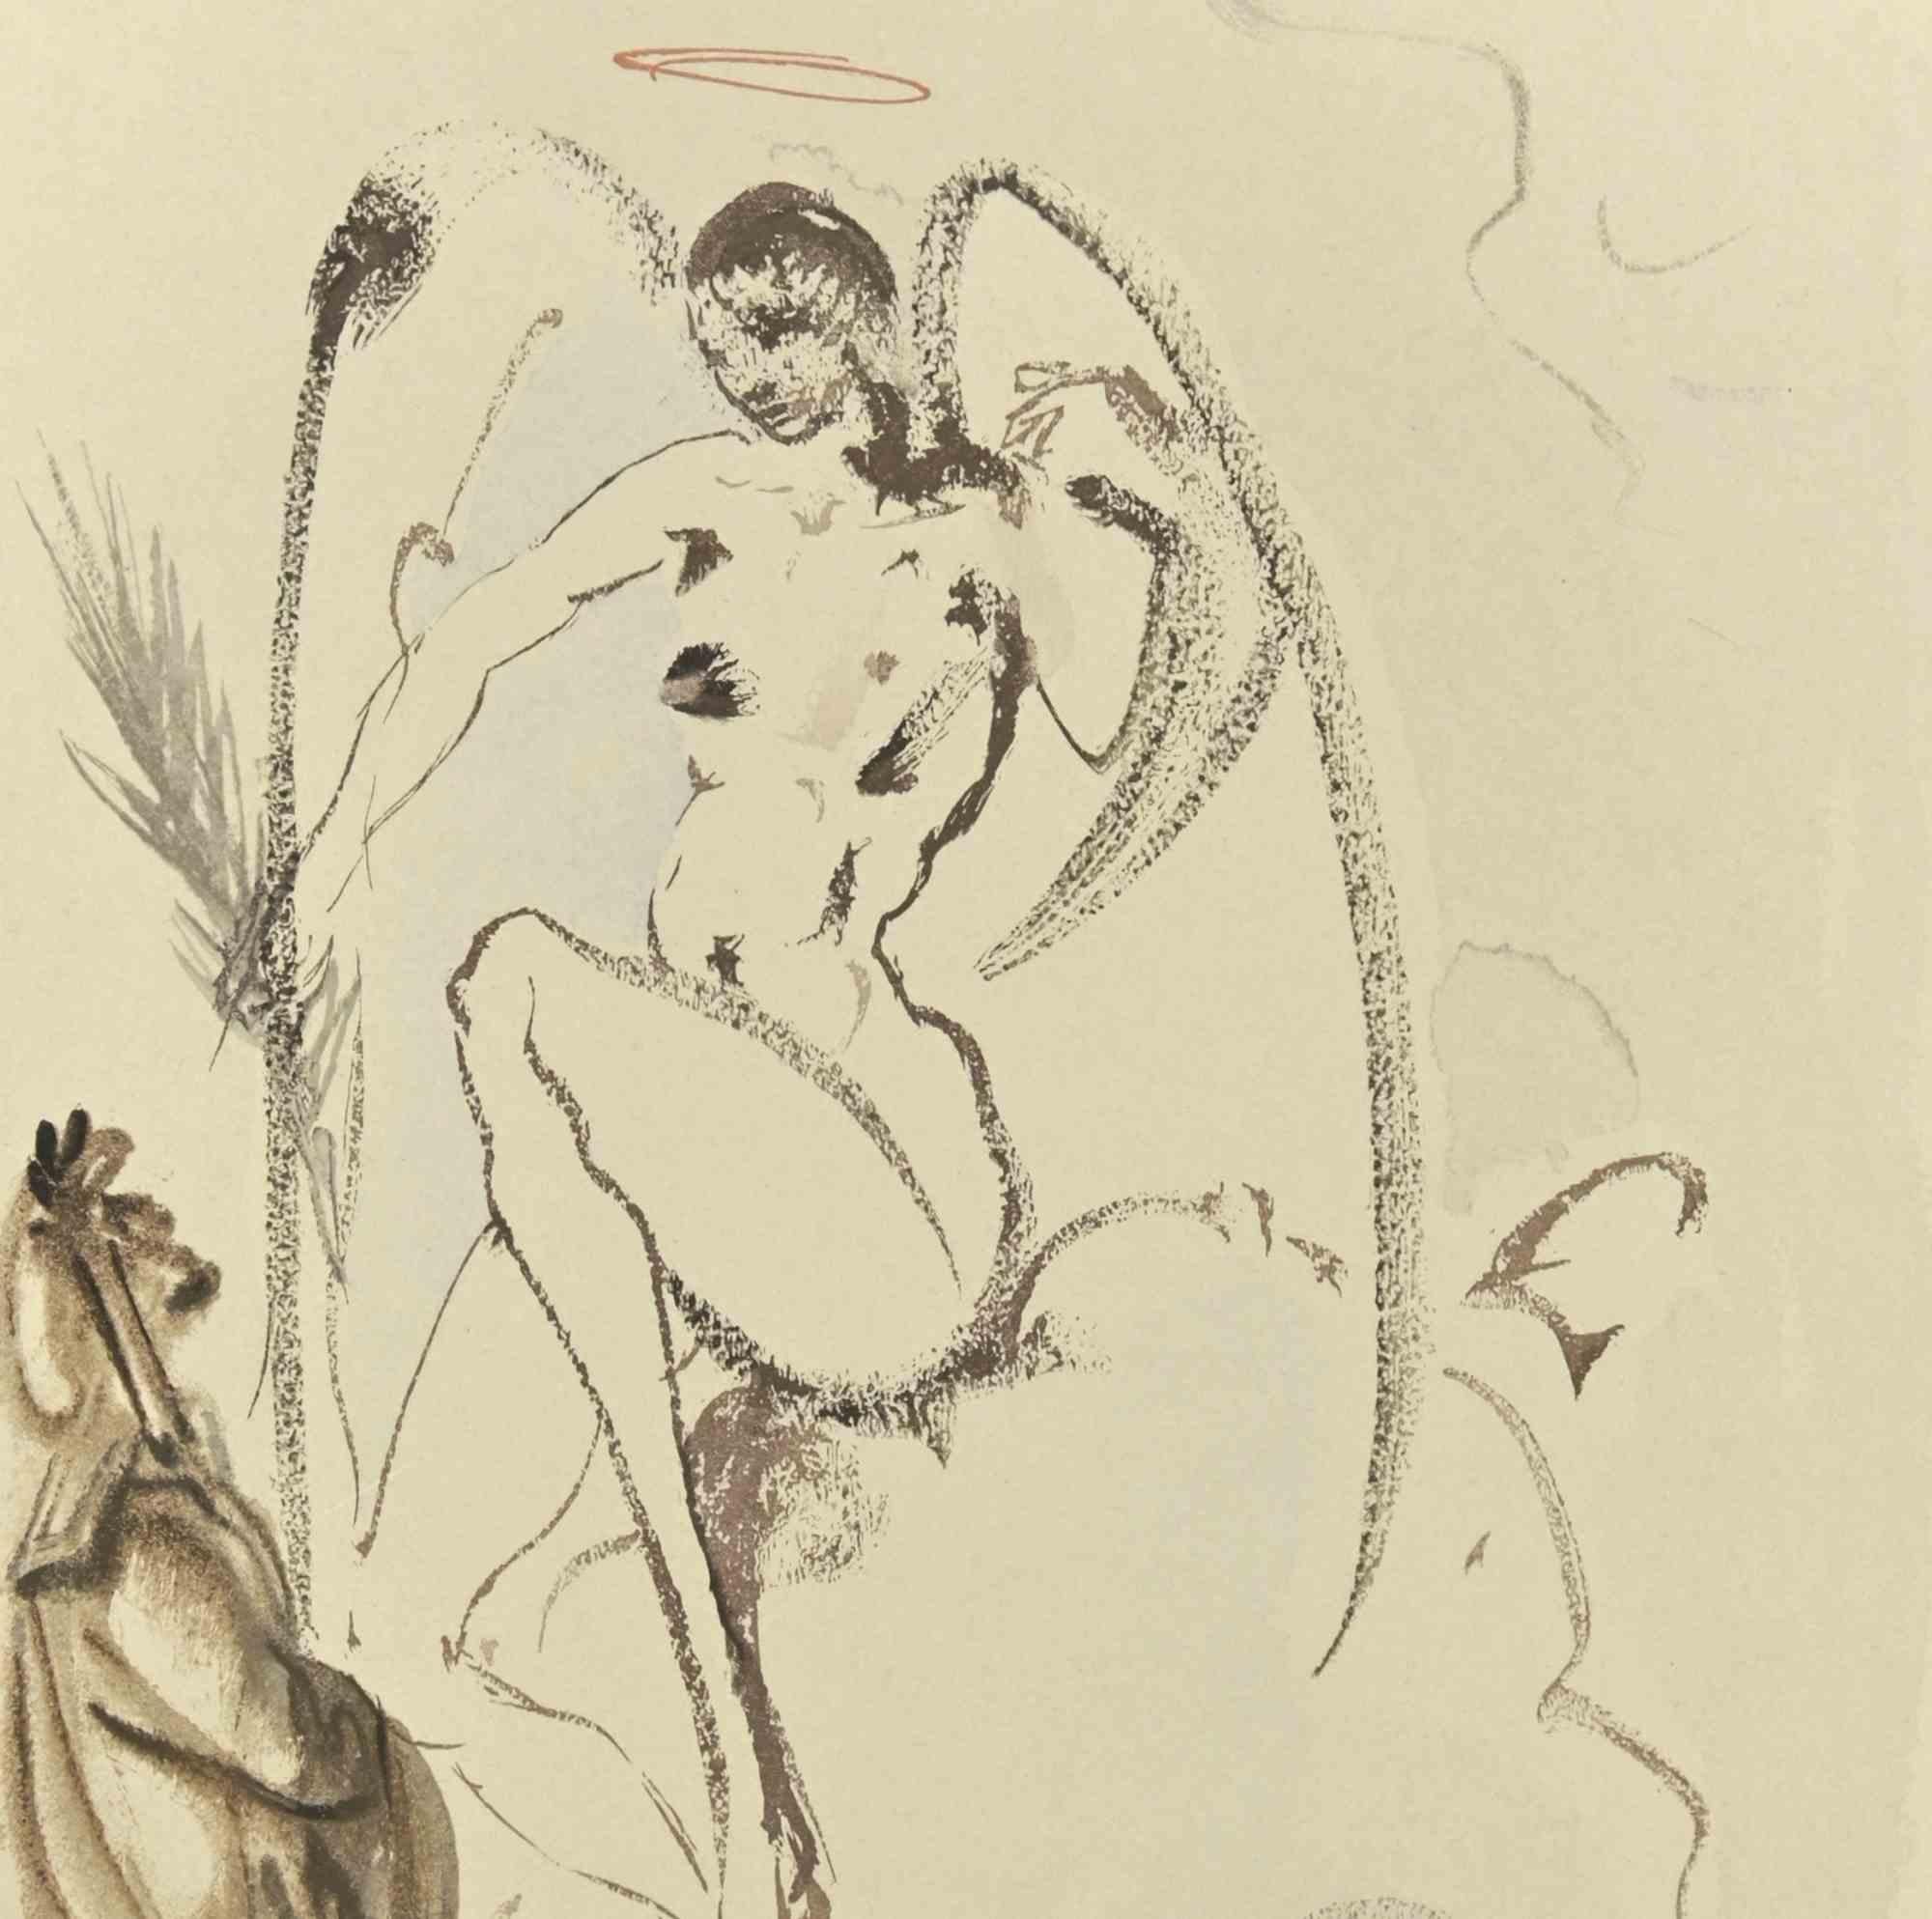 The Archangel Gabriel - Woodcut  - 1963 - Surrealist Print by Salvador Dalí